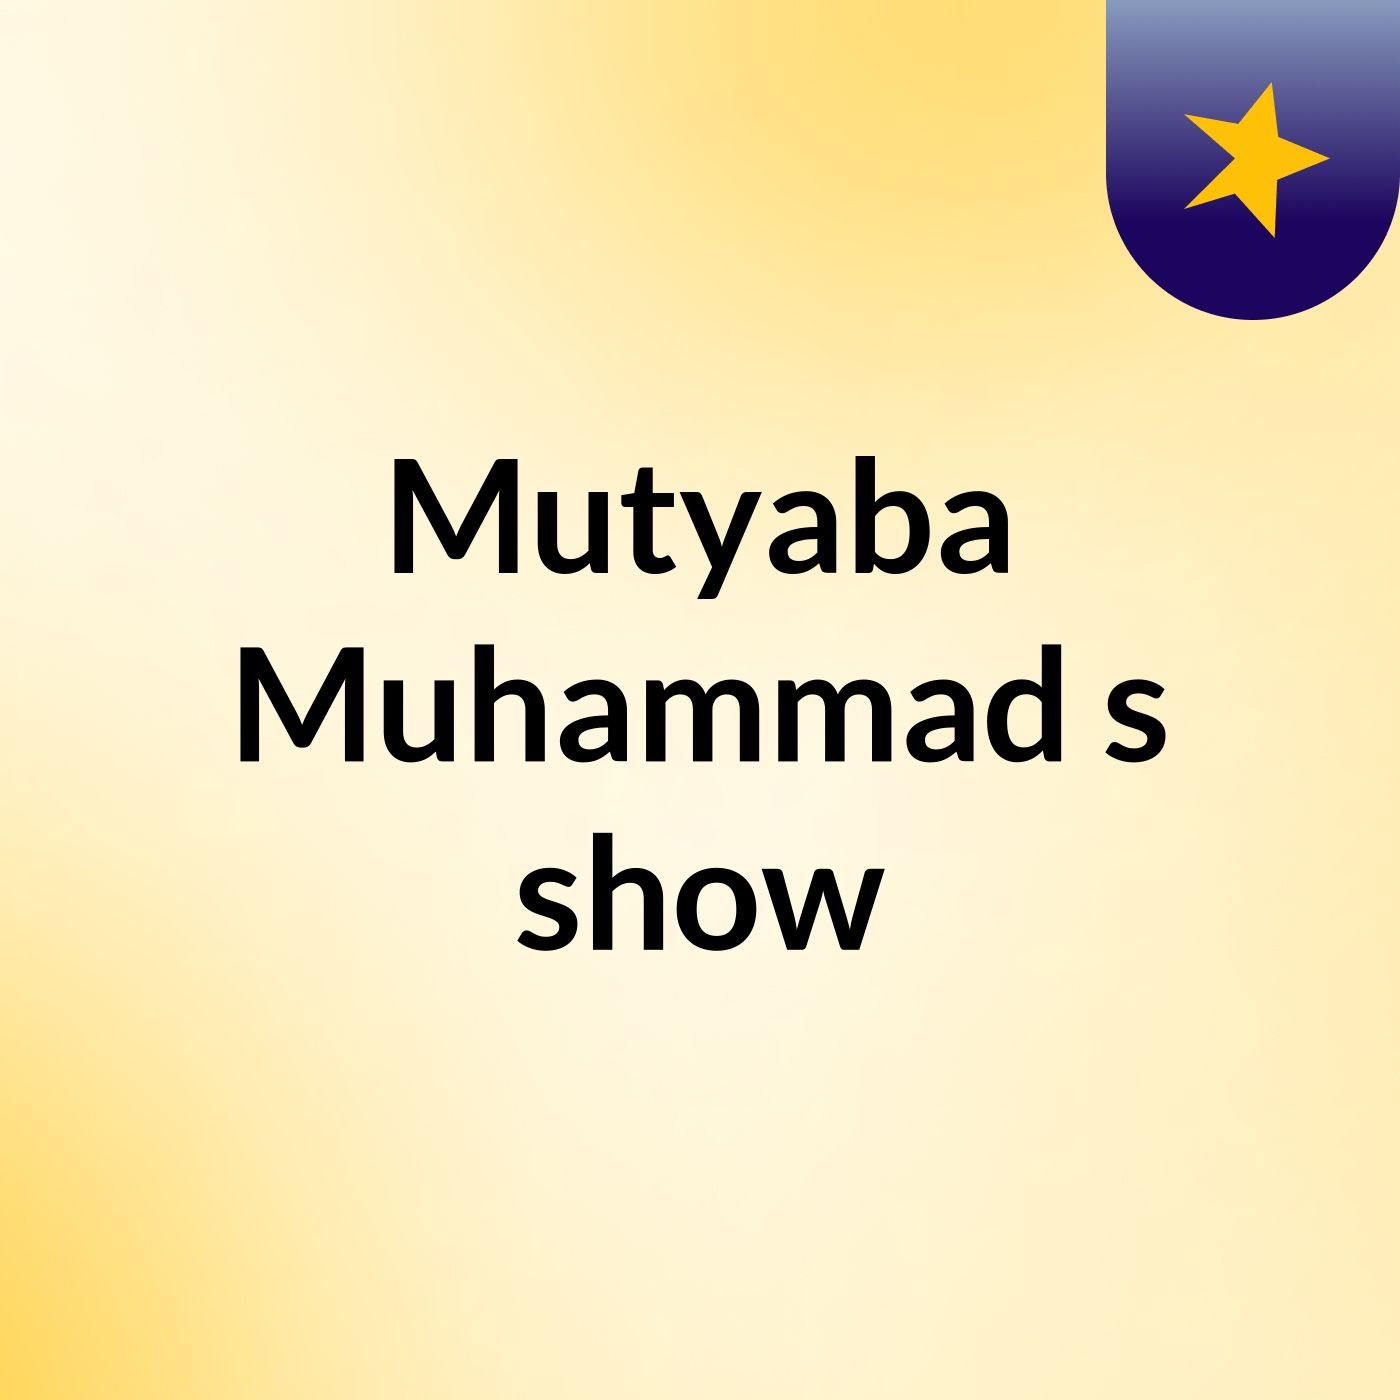 Mutyaba Muhammad's show